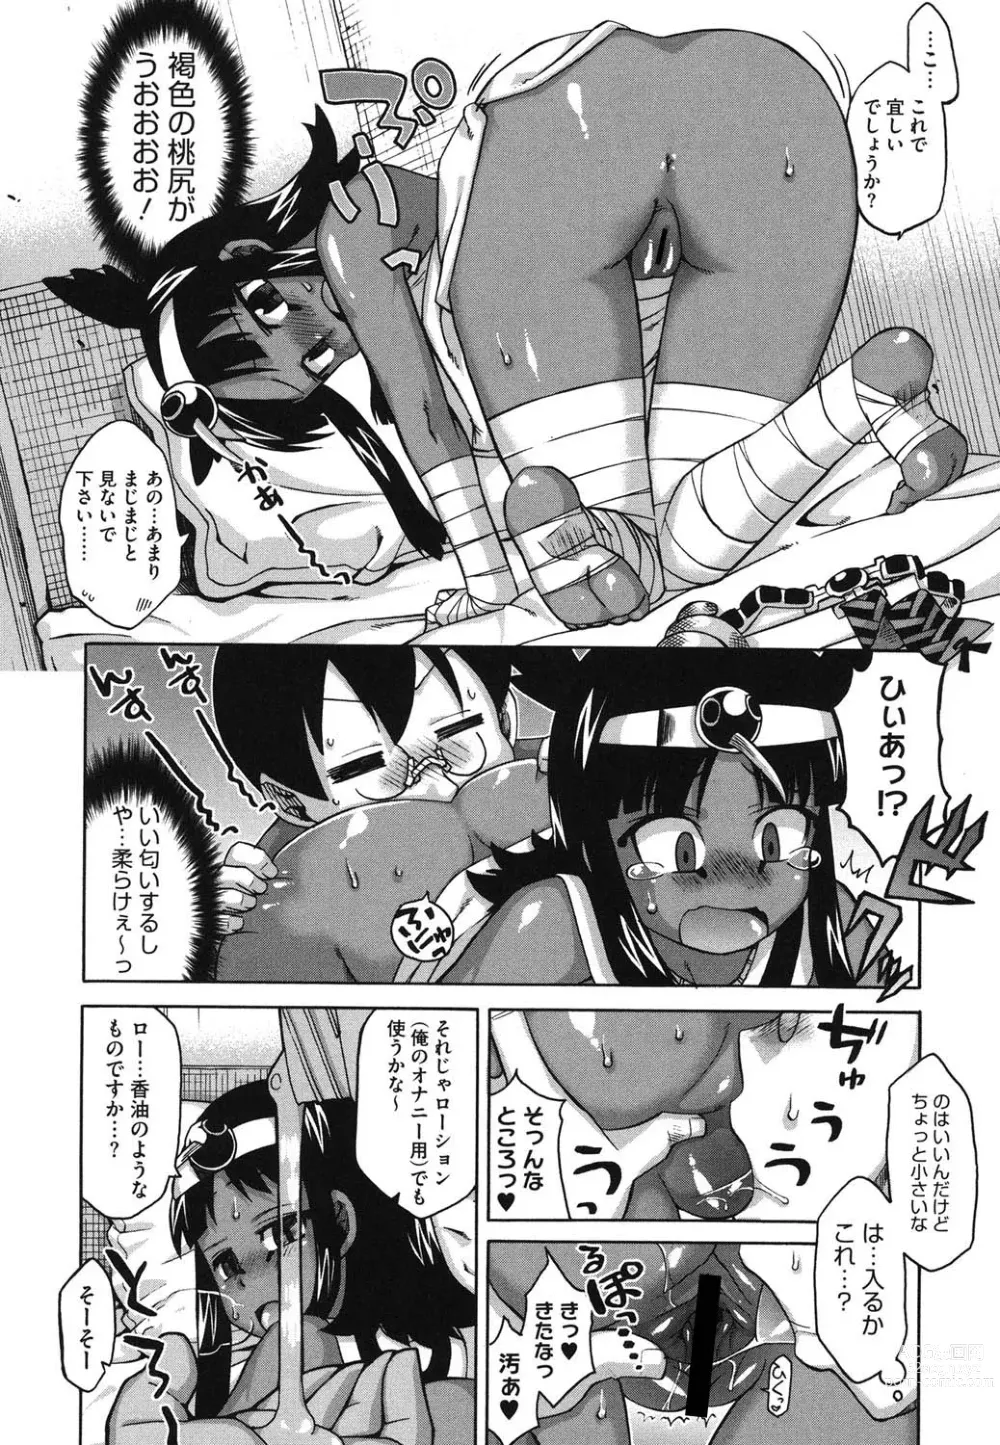 Page 13 of manga Sore wa Rekishi ni Kakanaide!